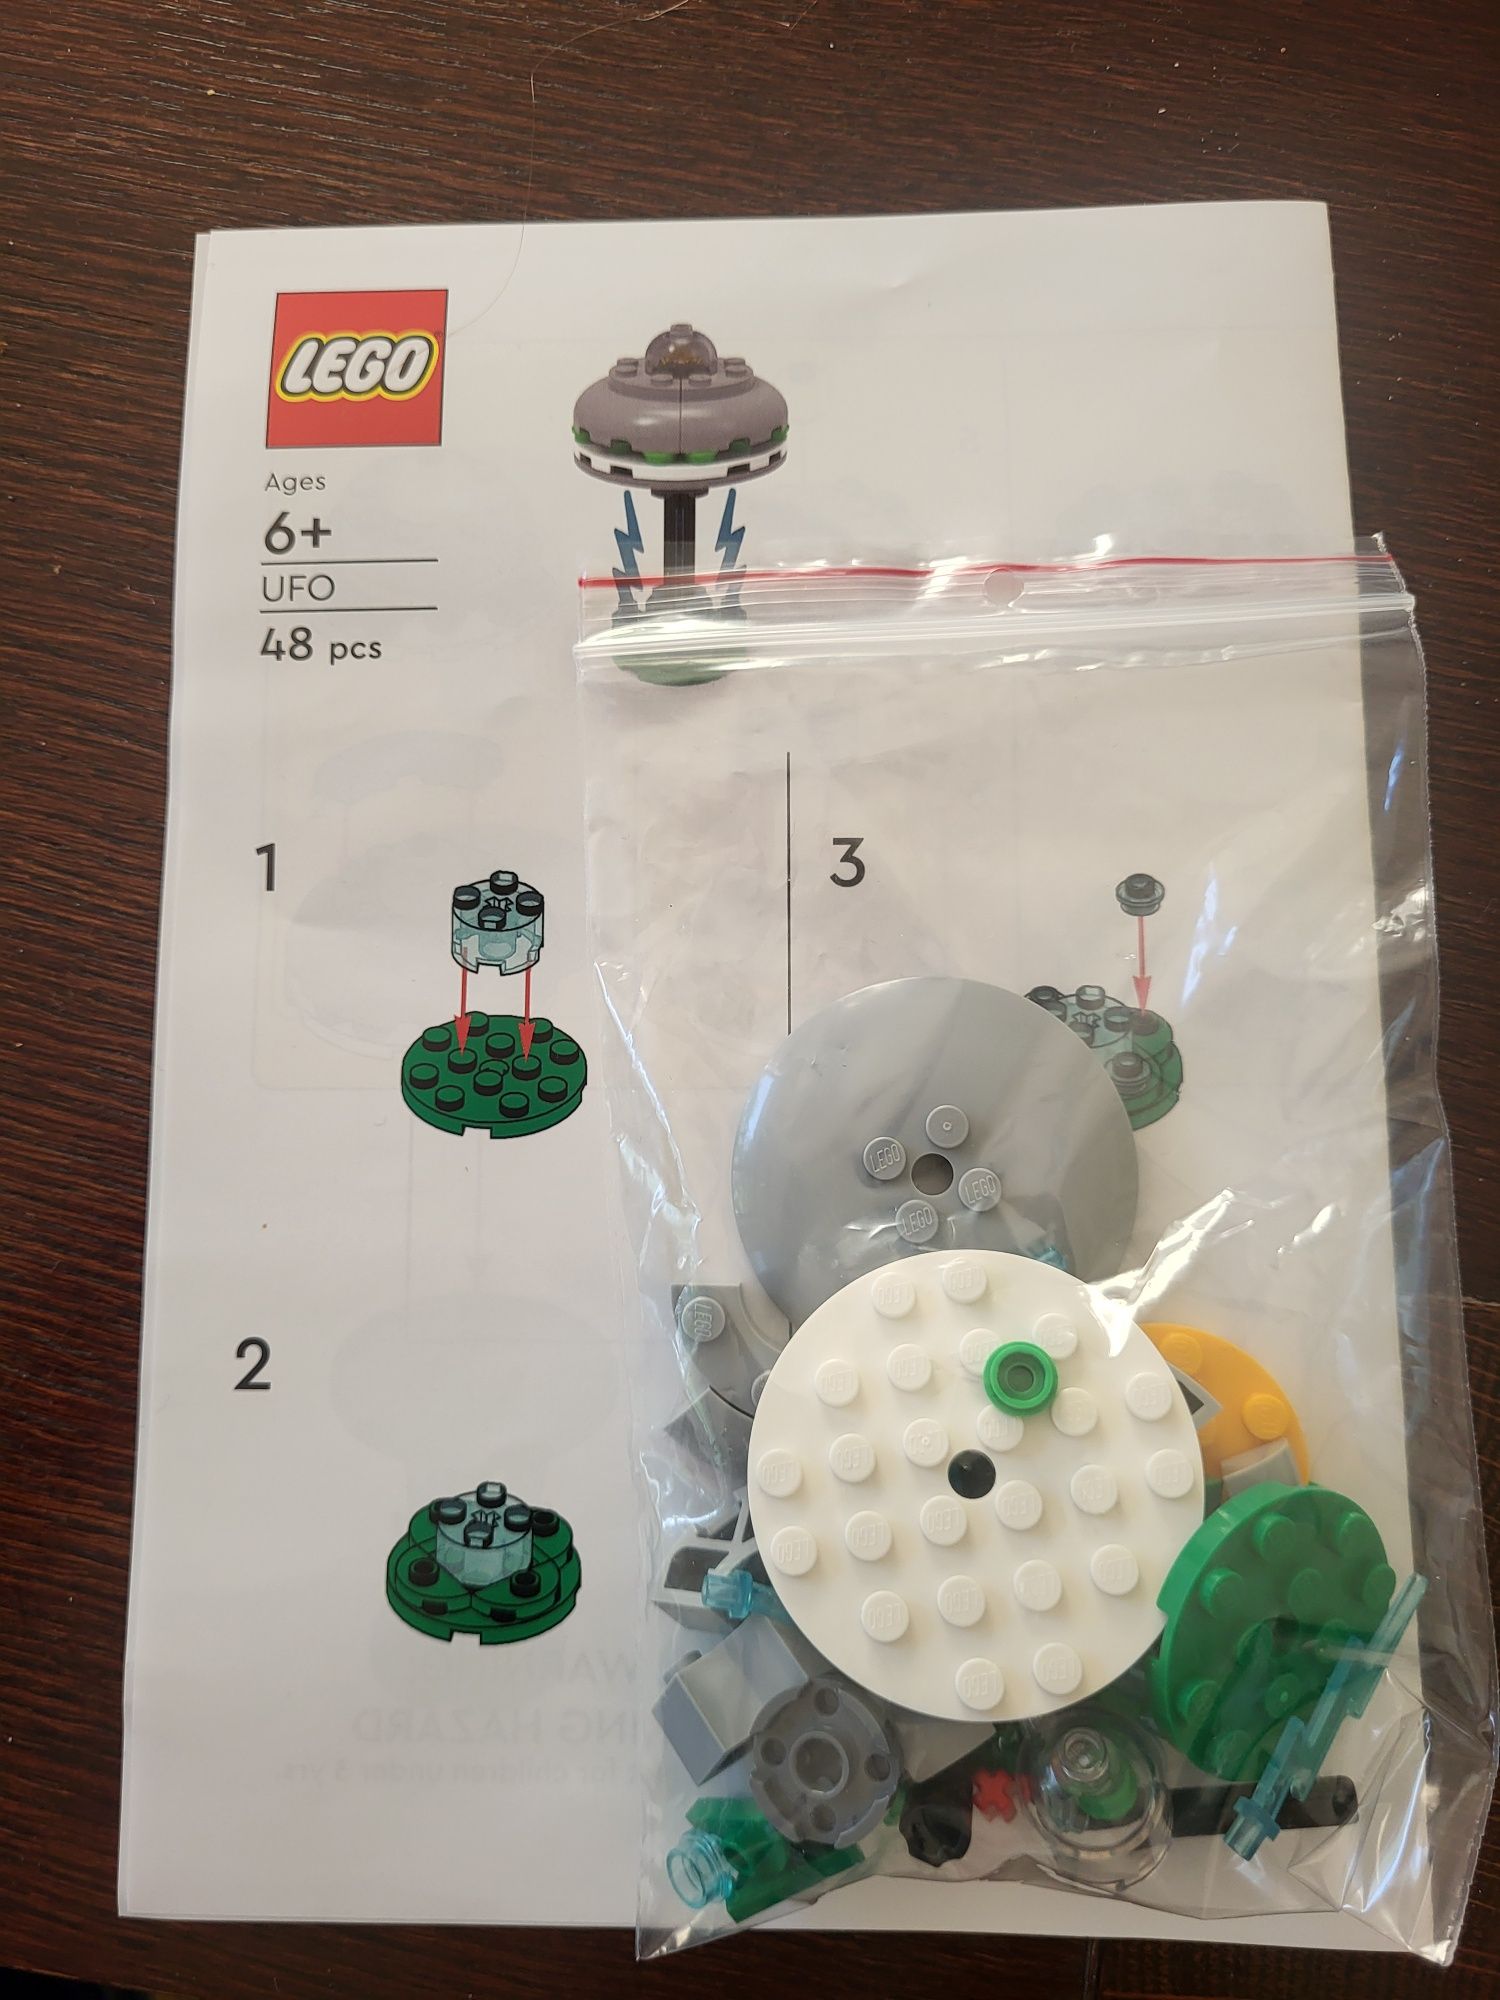 Lego zestaw UFO elementy + instruckja składnia